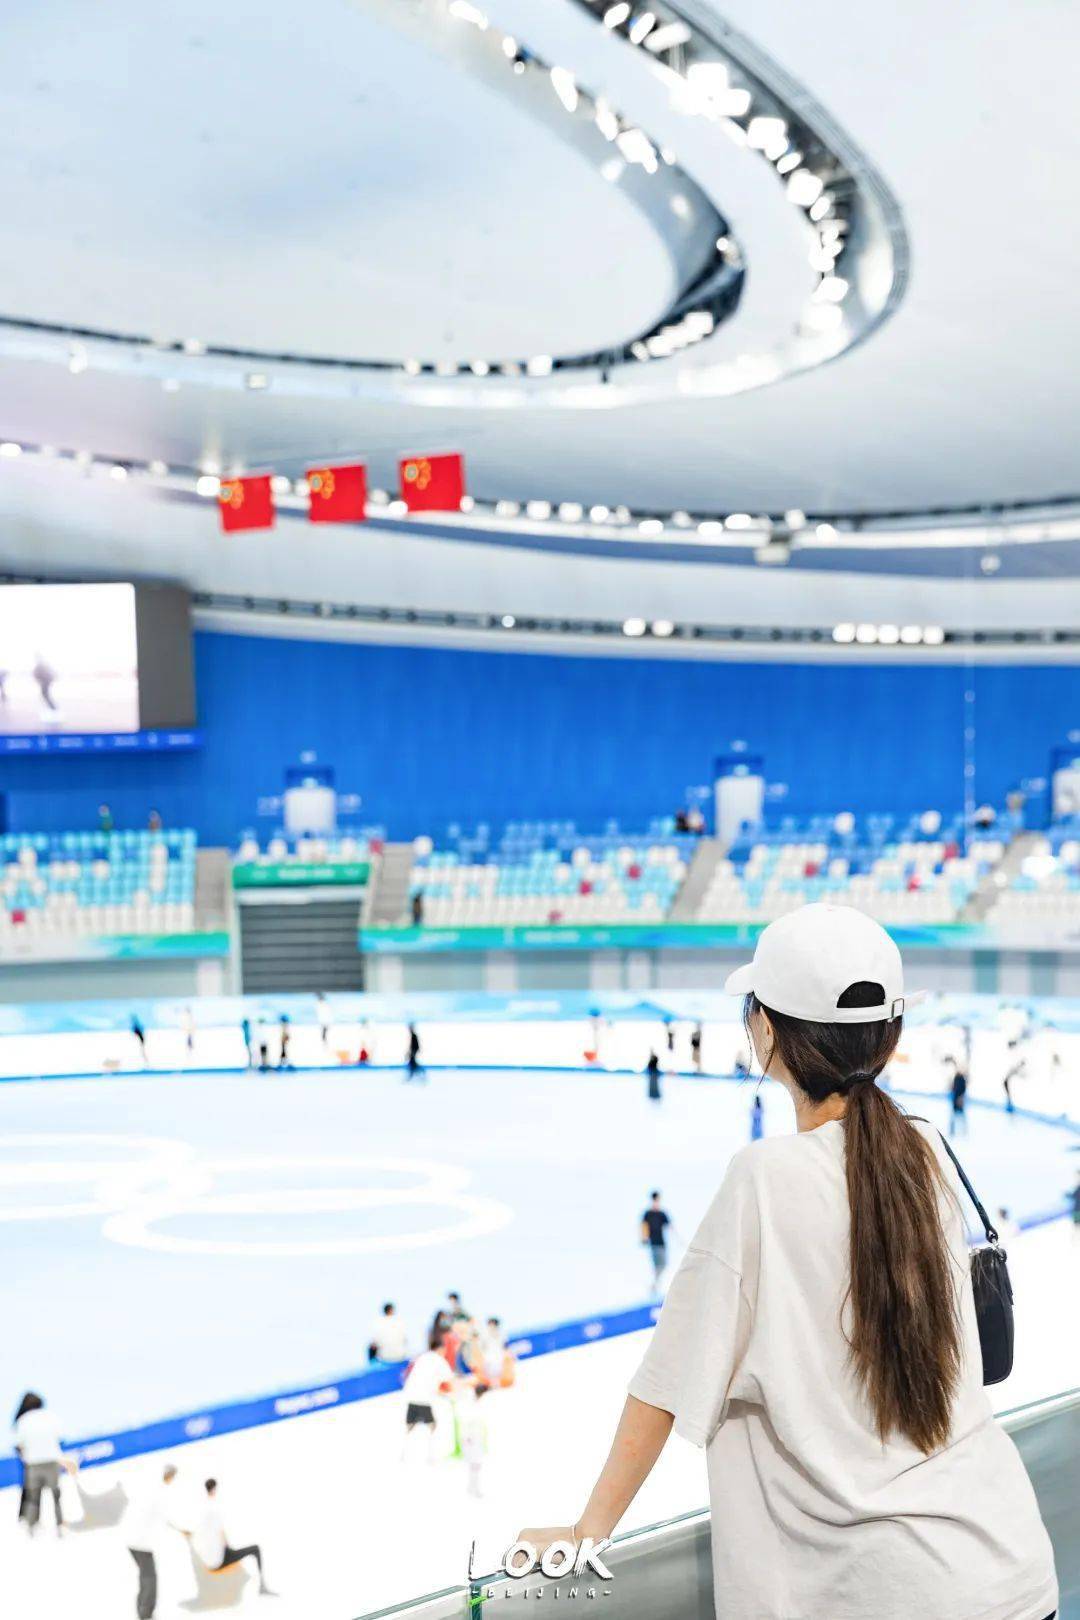 “冰立方”冰上运动中心正式营业|冰立方_新浪财经_新浪网